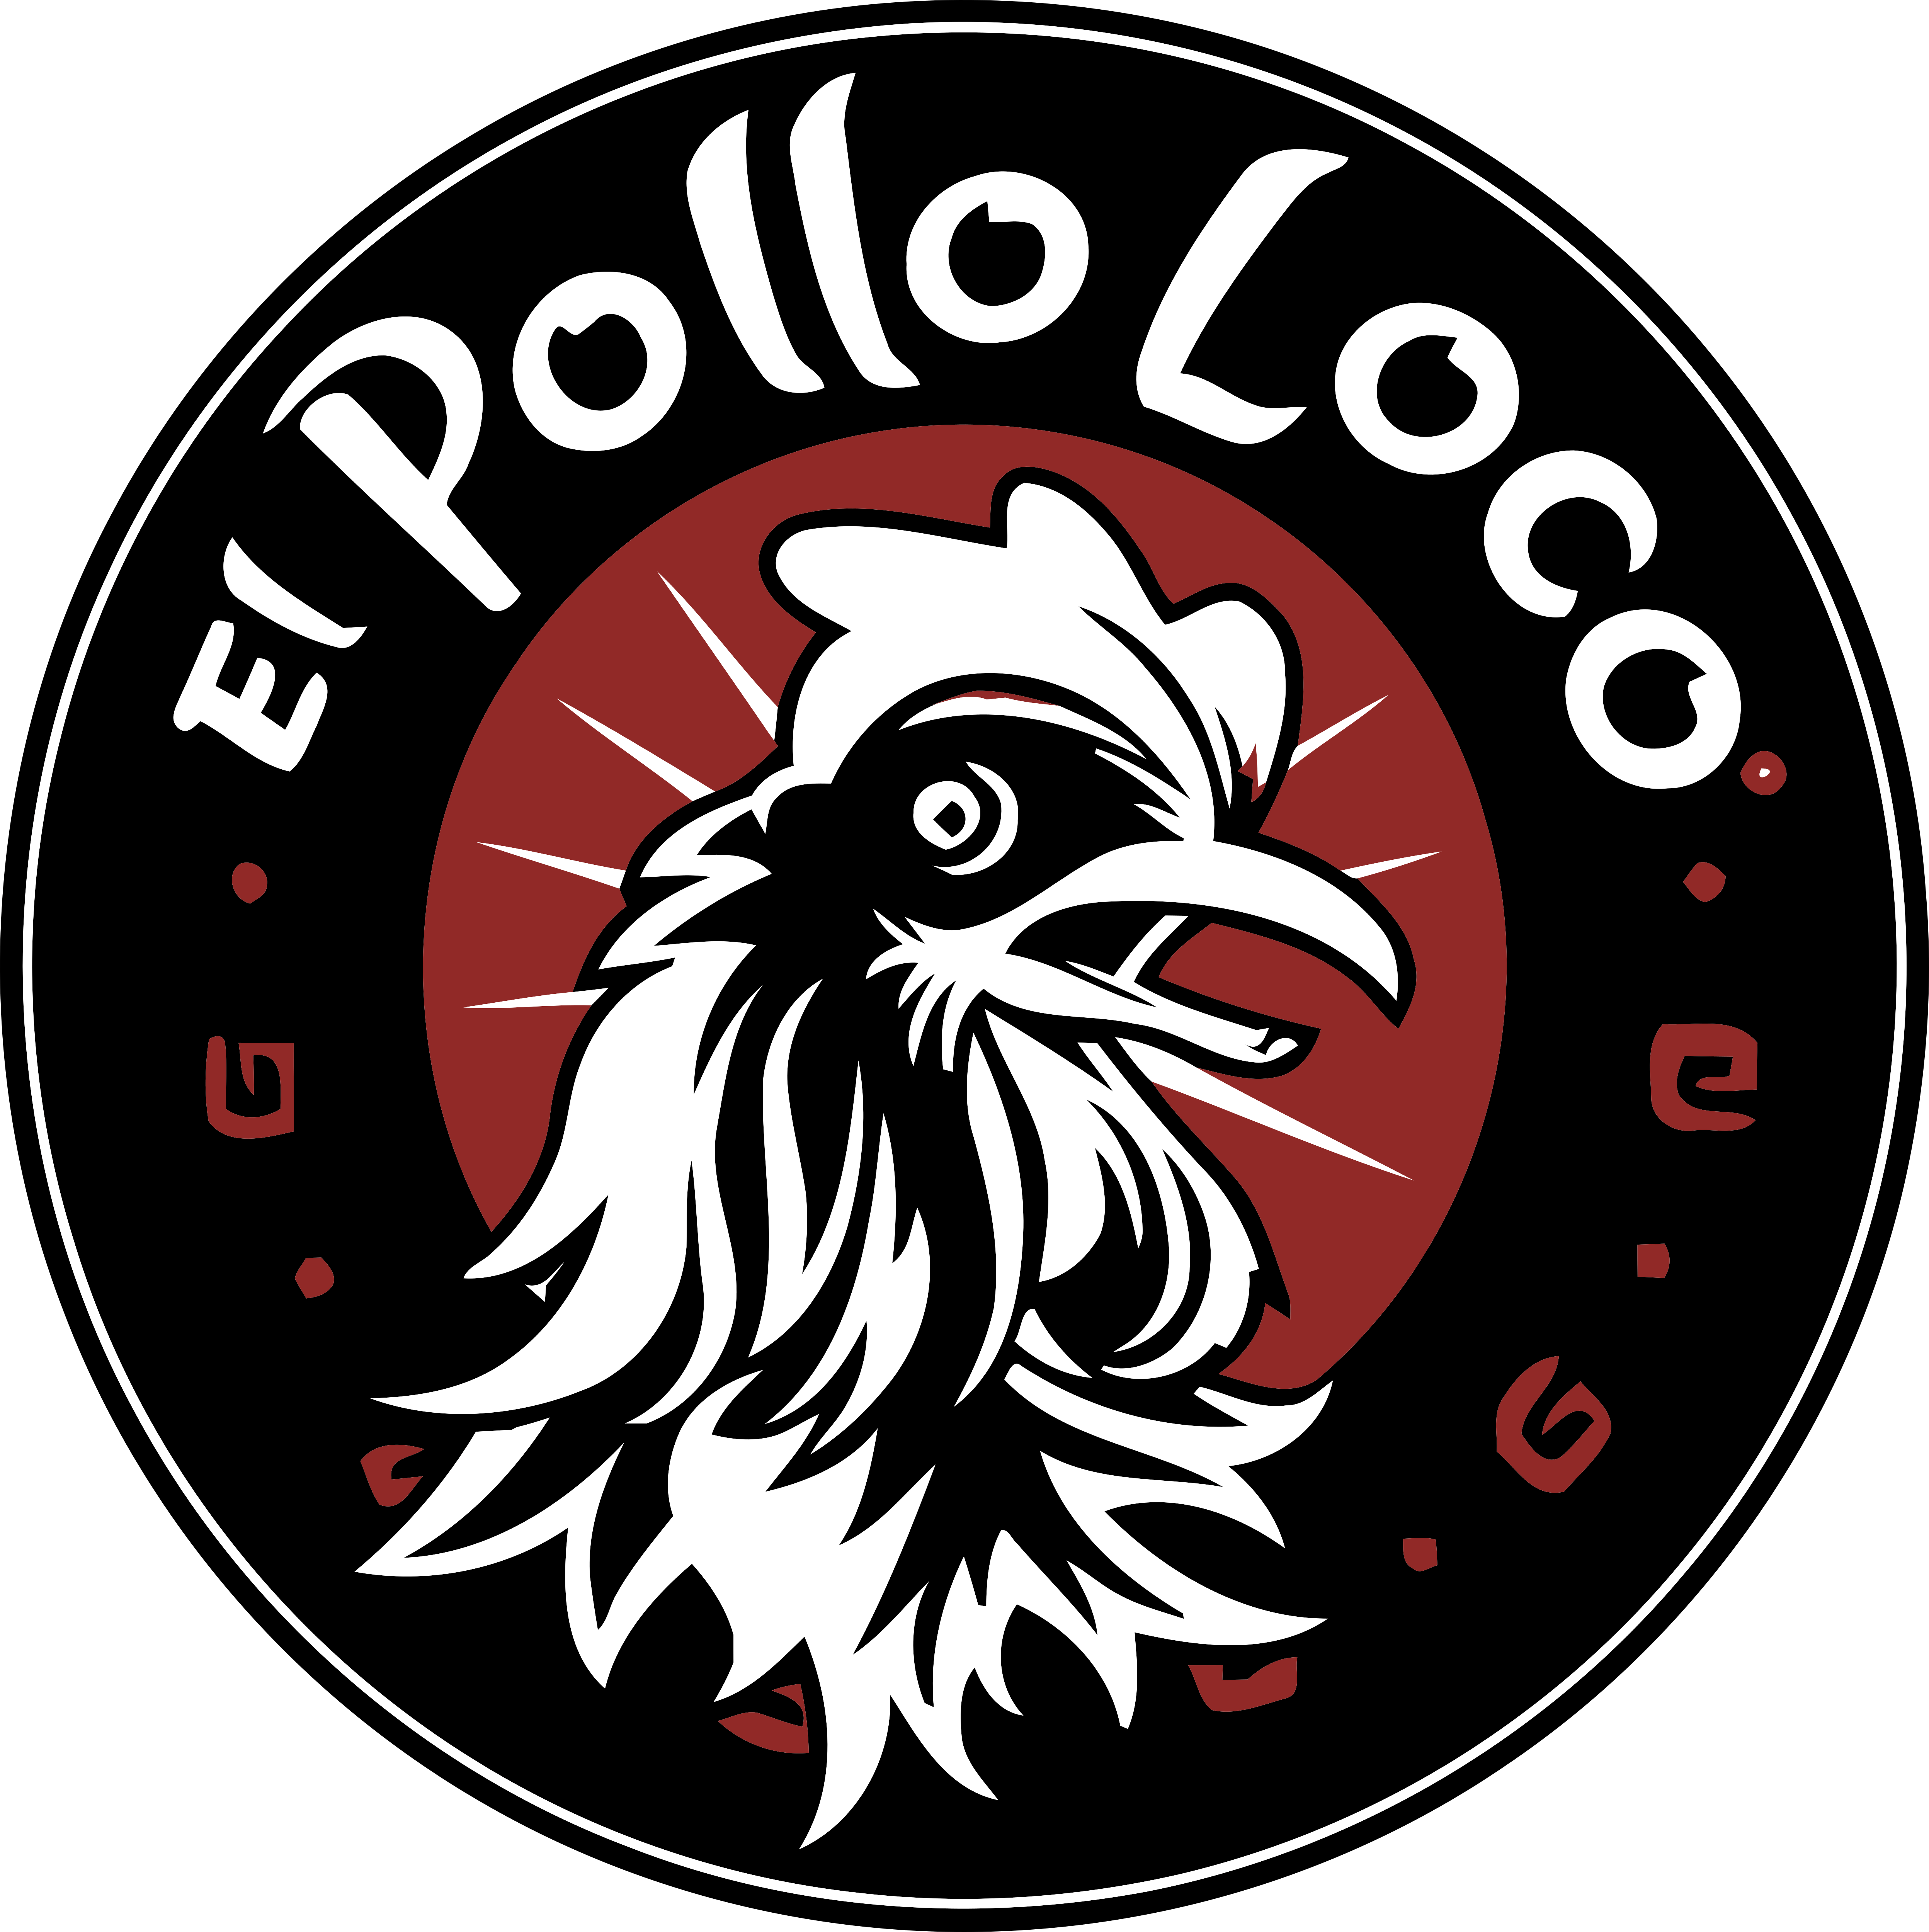 Lo Co Logo - El Pollo Loco – Logos Download